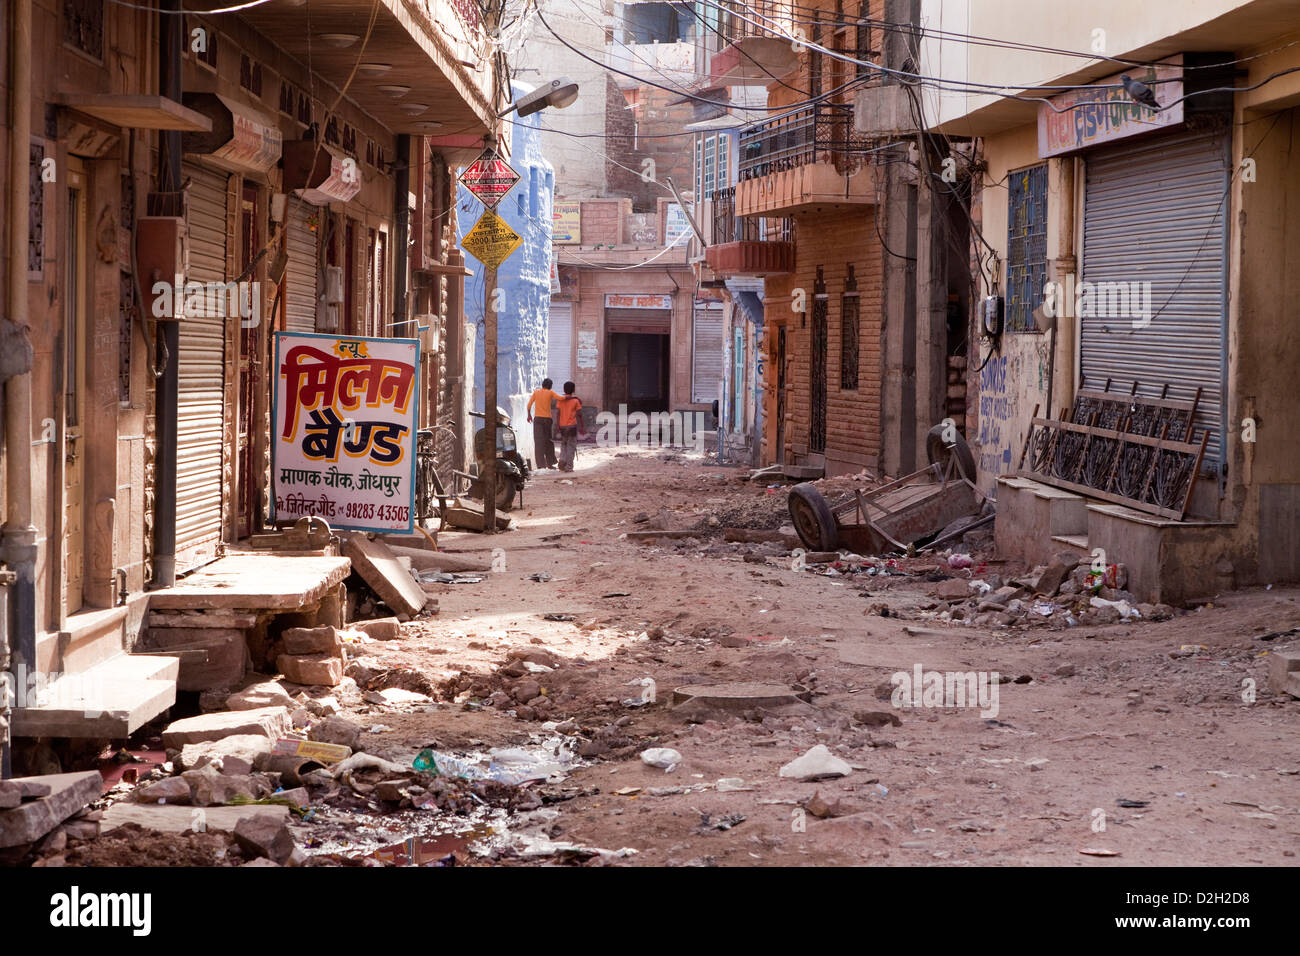 Indien, Rajasthan, Jodhpur, zwei jungen hinunter verfallene Straße Stockfoto